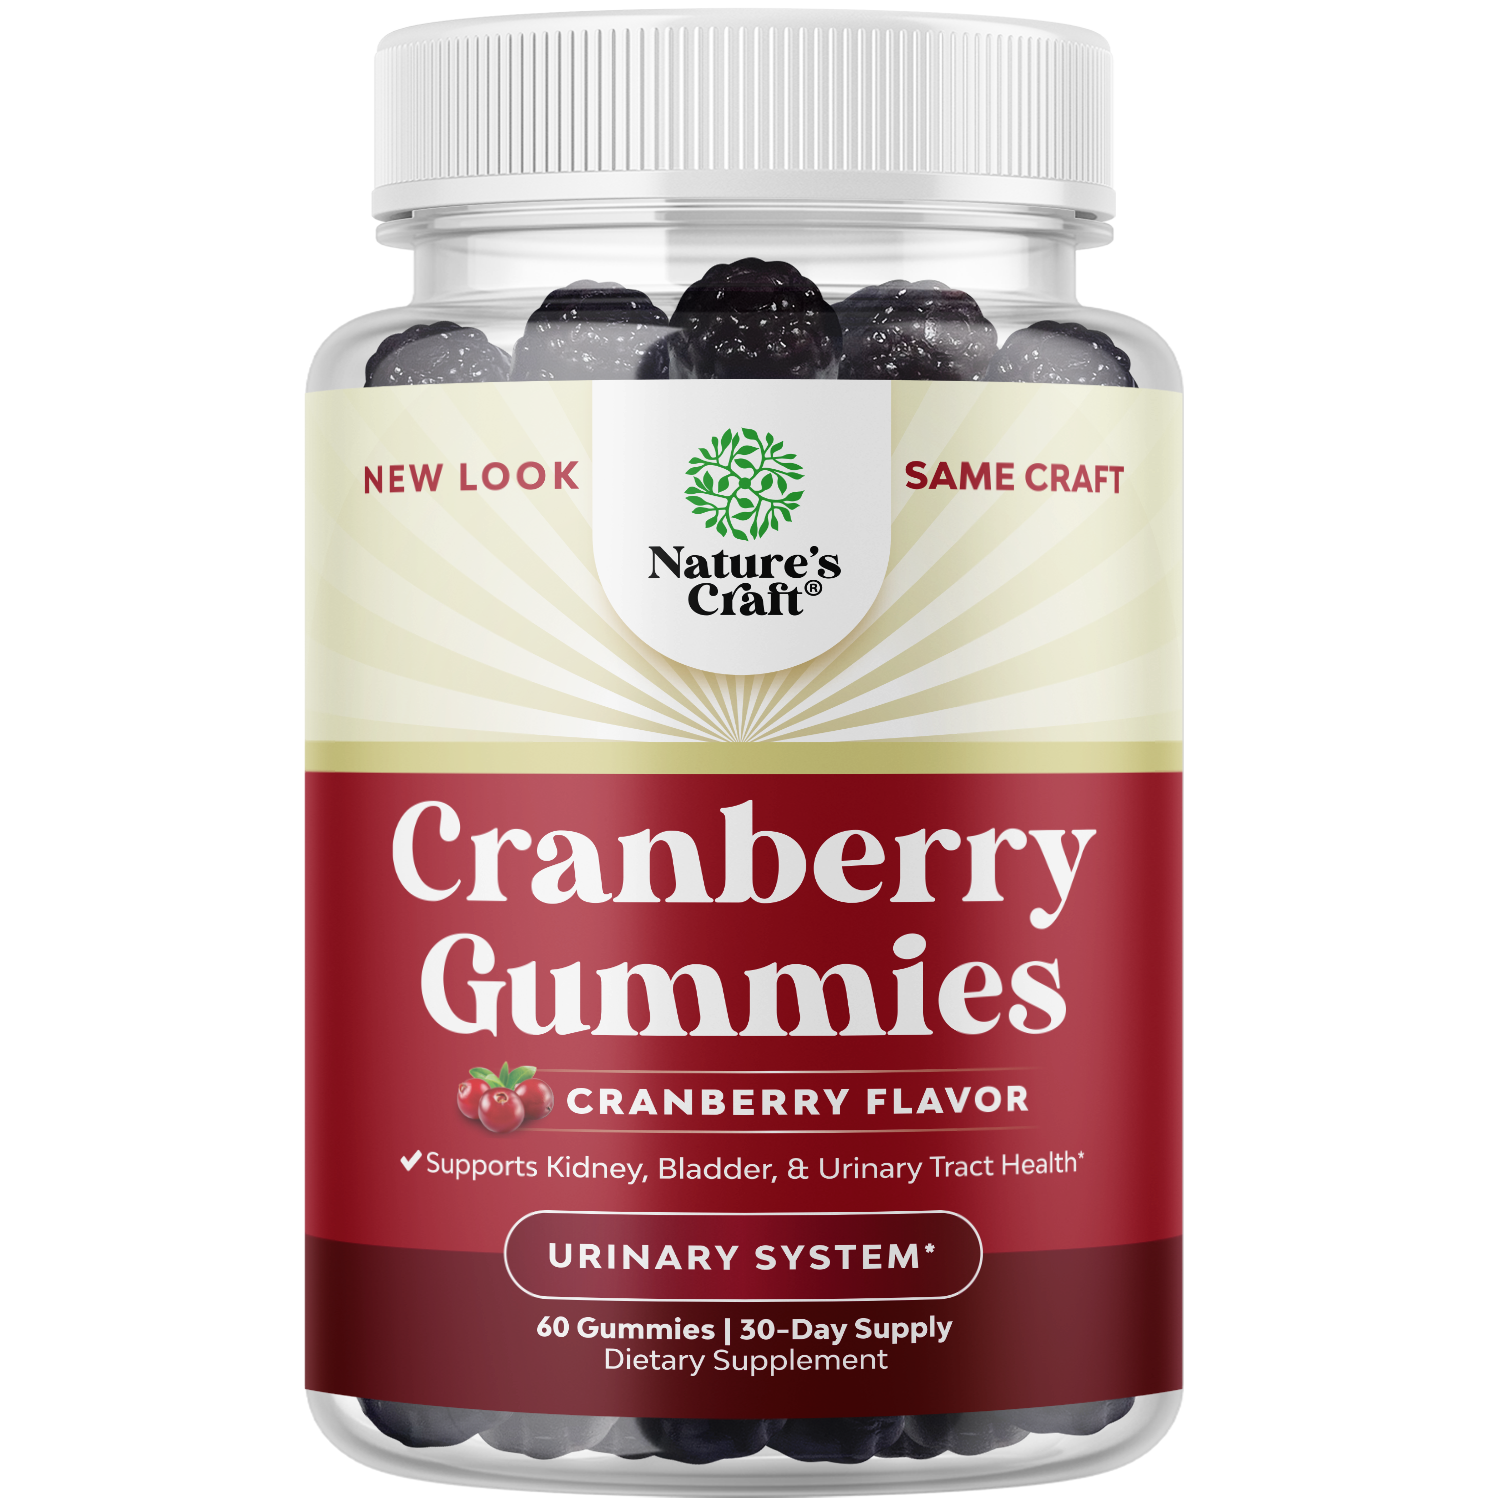 Cranberry Gummies 1000mg per serving - 60 Gummies